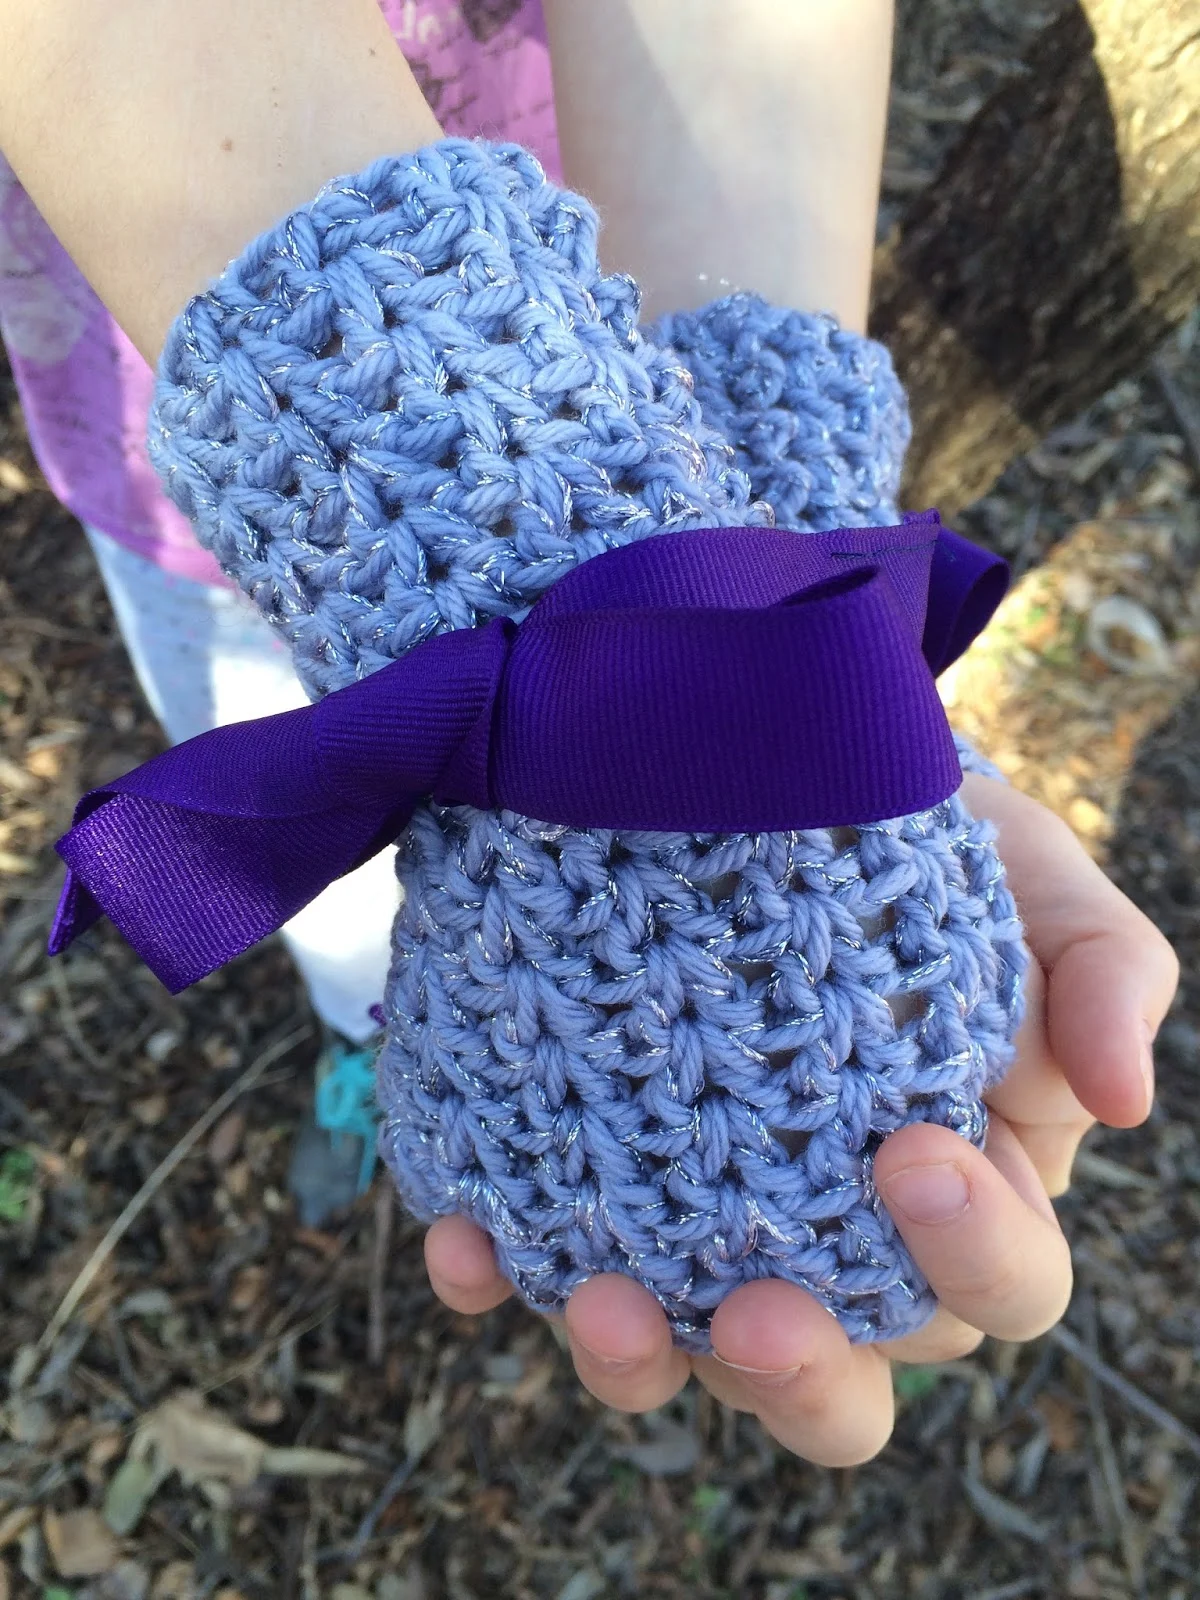 Ridged Crochet Fingerless Gloves - My Crochet Space